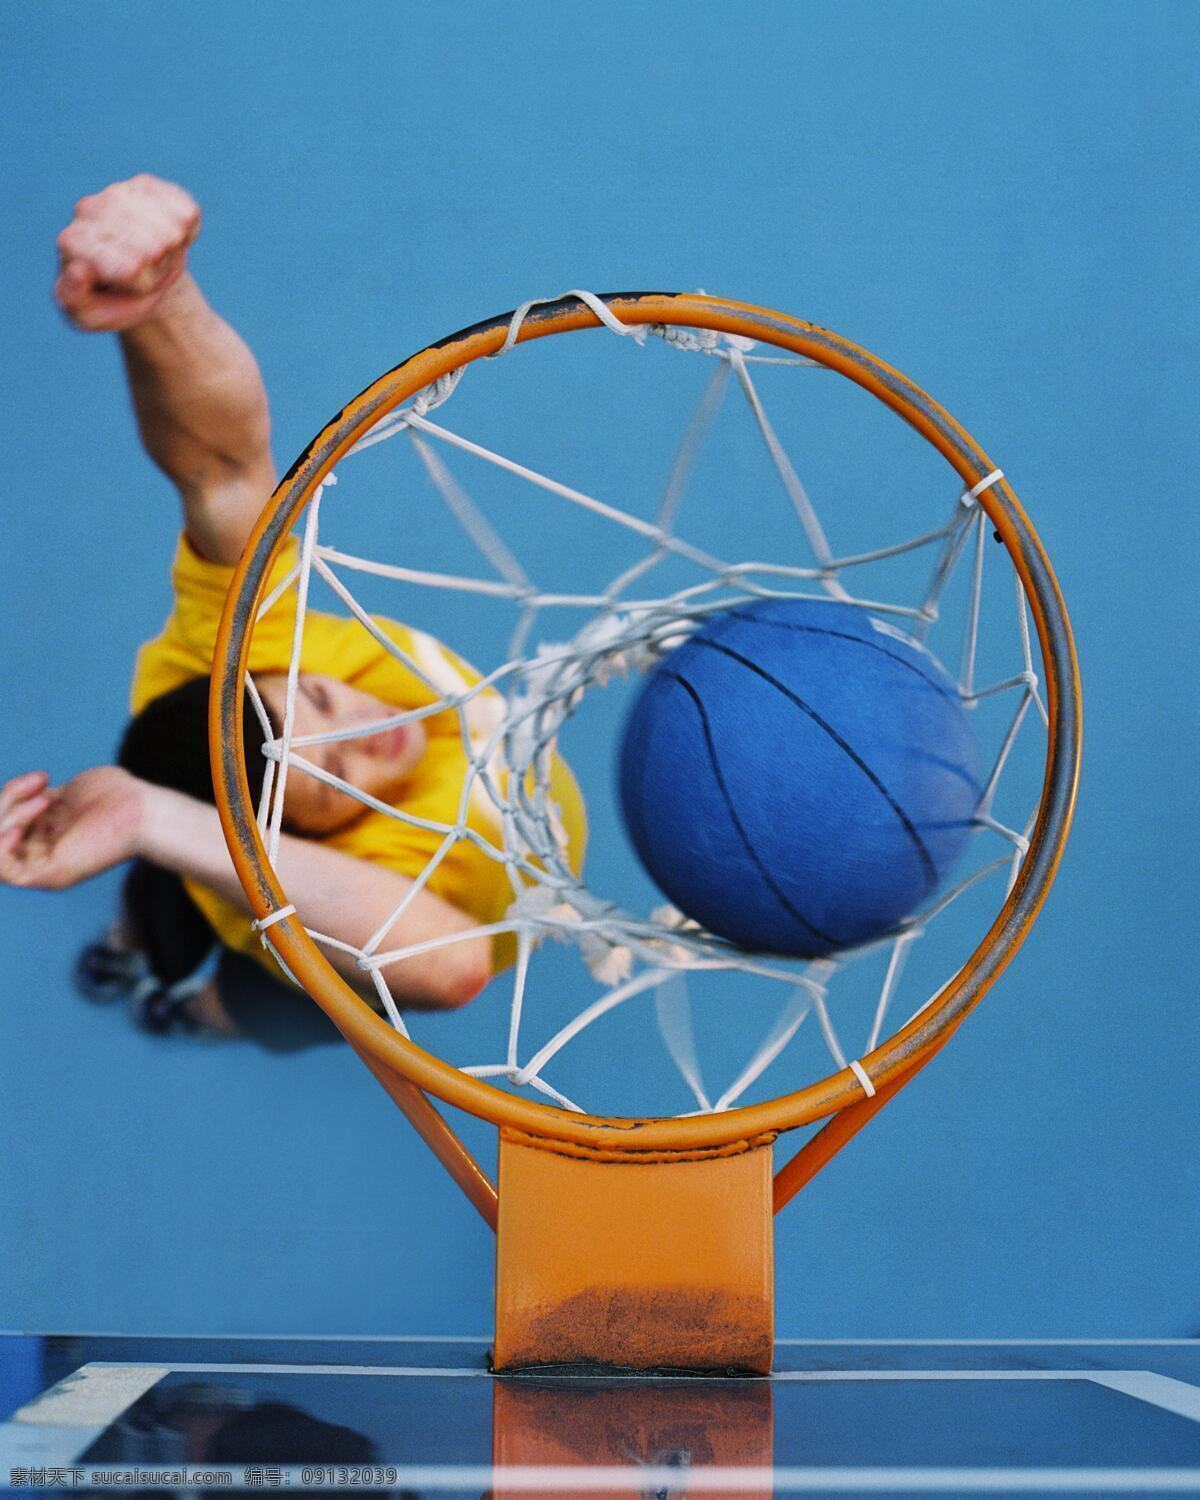 玩篮球的女孩 国外运动 运动人物 运动素材 运动 体育 运动员 篮球 体育运动 生活百科 蓝色